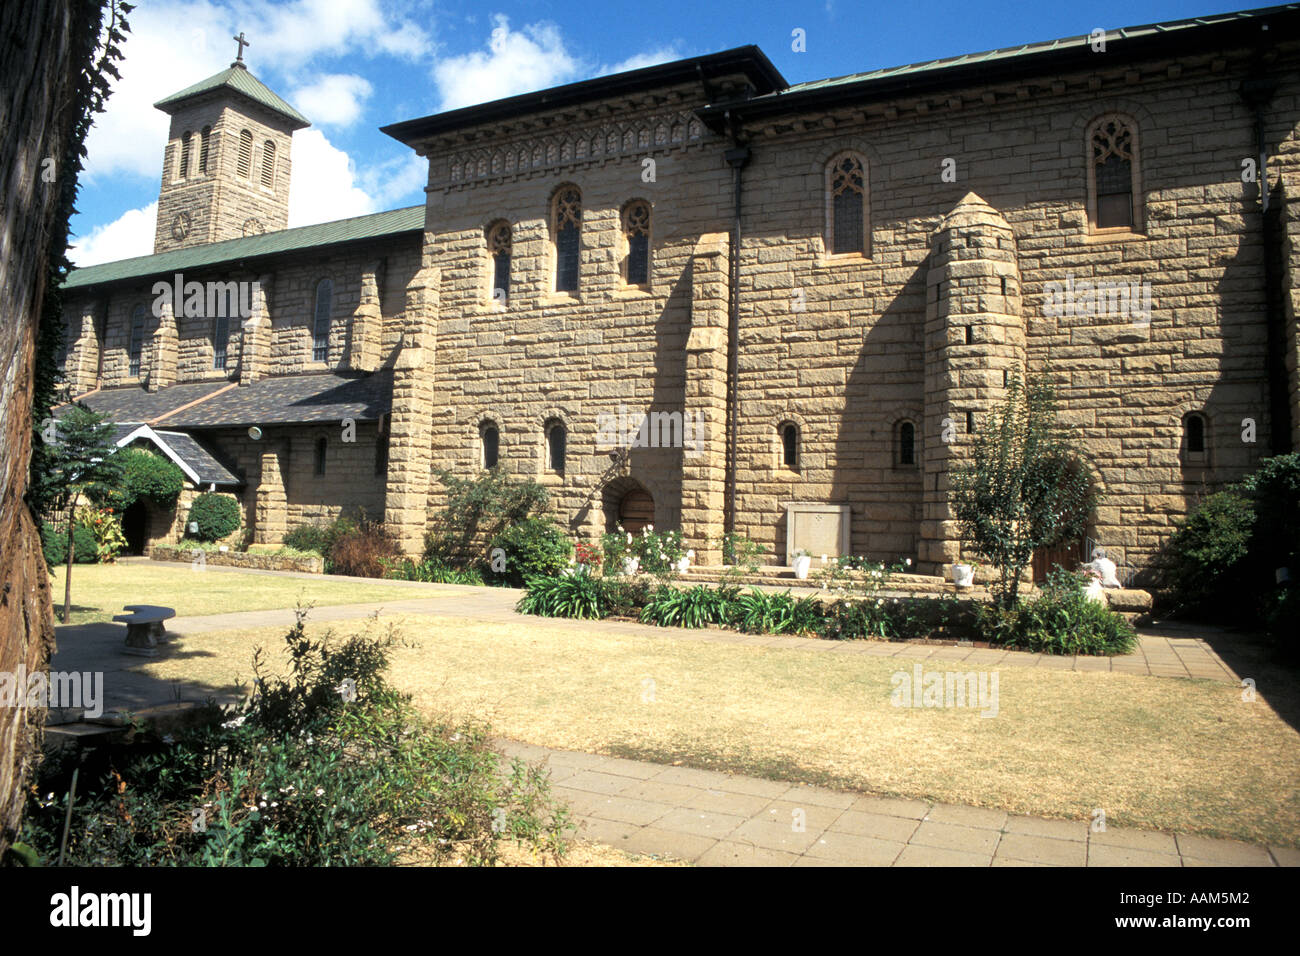 La cathédrale de Salisbury Harare Zimbabwe Afrique - conçu par l'architecte britannique Sir Herbert Baker Banque D'Images